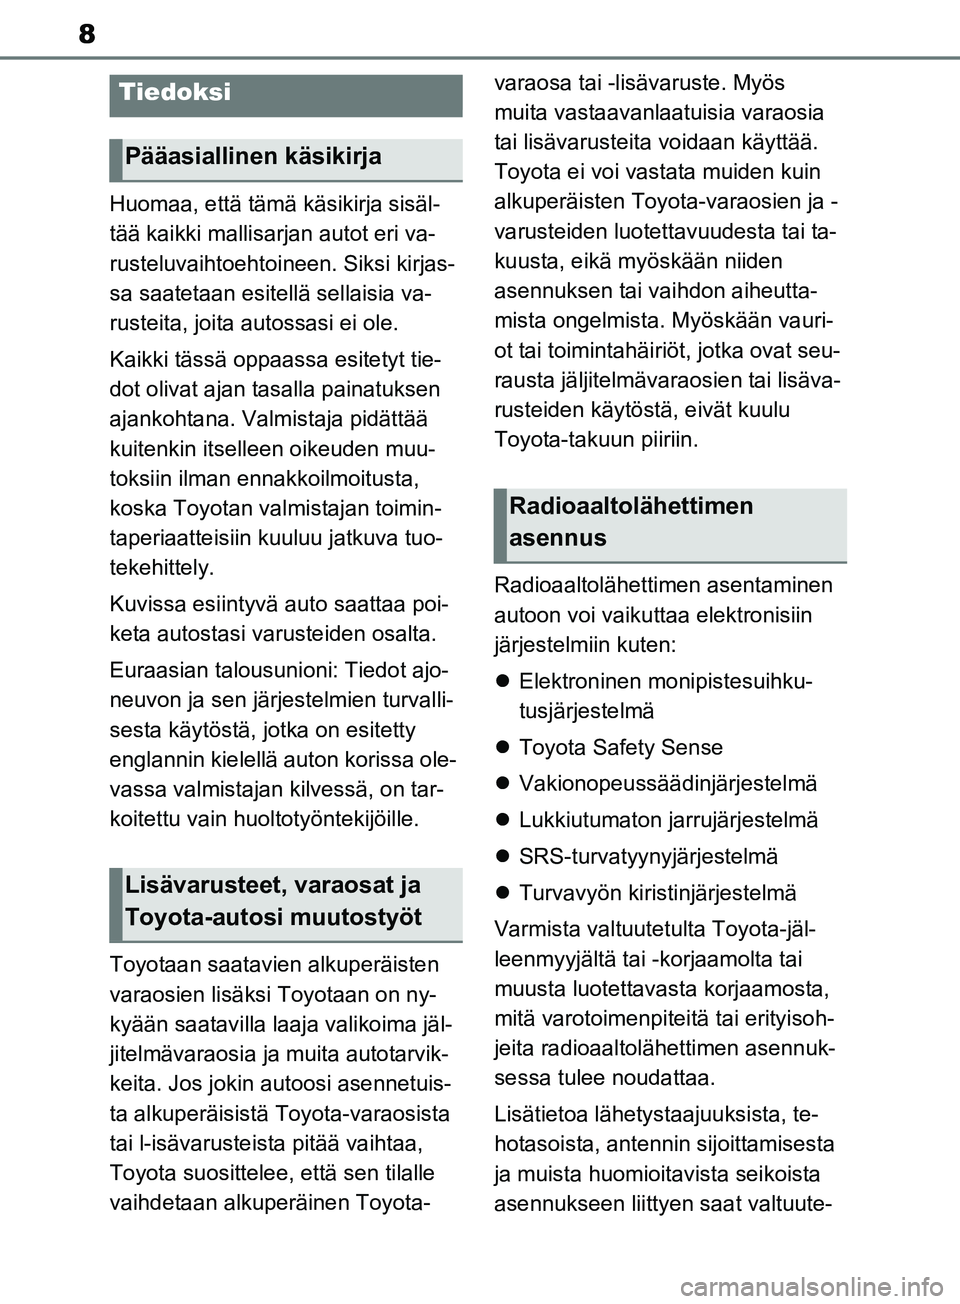 TOYOTA RAV4 2020  Omistajan Käsikirja (in Finnish) 8
Huomaa, että tämä käsikirja sisäl-
tää kaikki mallisarjan autot eri va-
rusteluvaihtoehtoineen. Siksi kirjas-
sa saatetaan esitellä sellaisia va-
rusteita, joita autossasi ei ole.
Kaikki tä